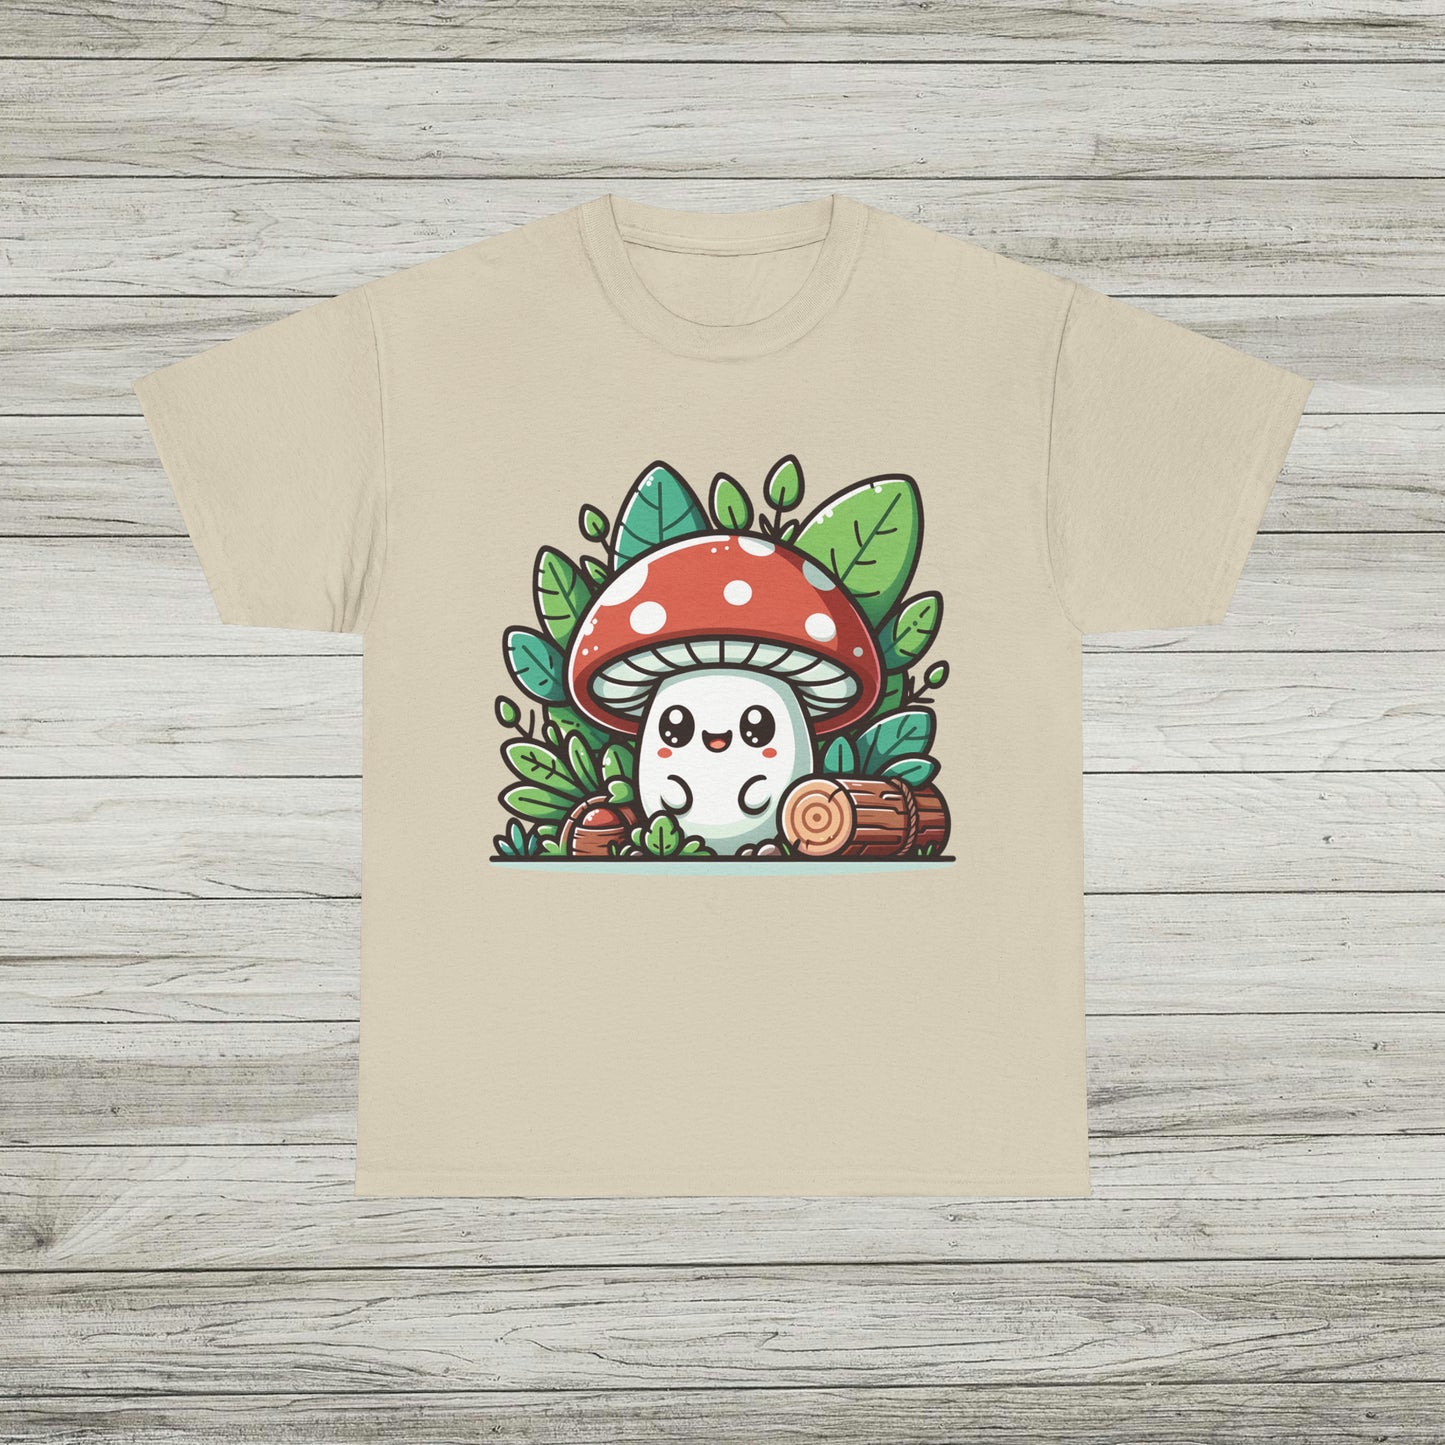 Happy Mushroom T-Shirt, Shroom in the Forest TShirt, Retro Hippie Fungi Tee